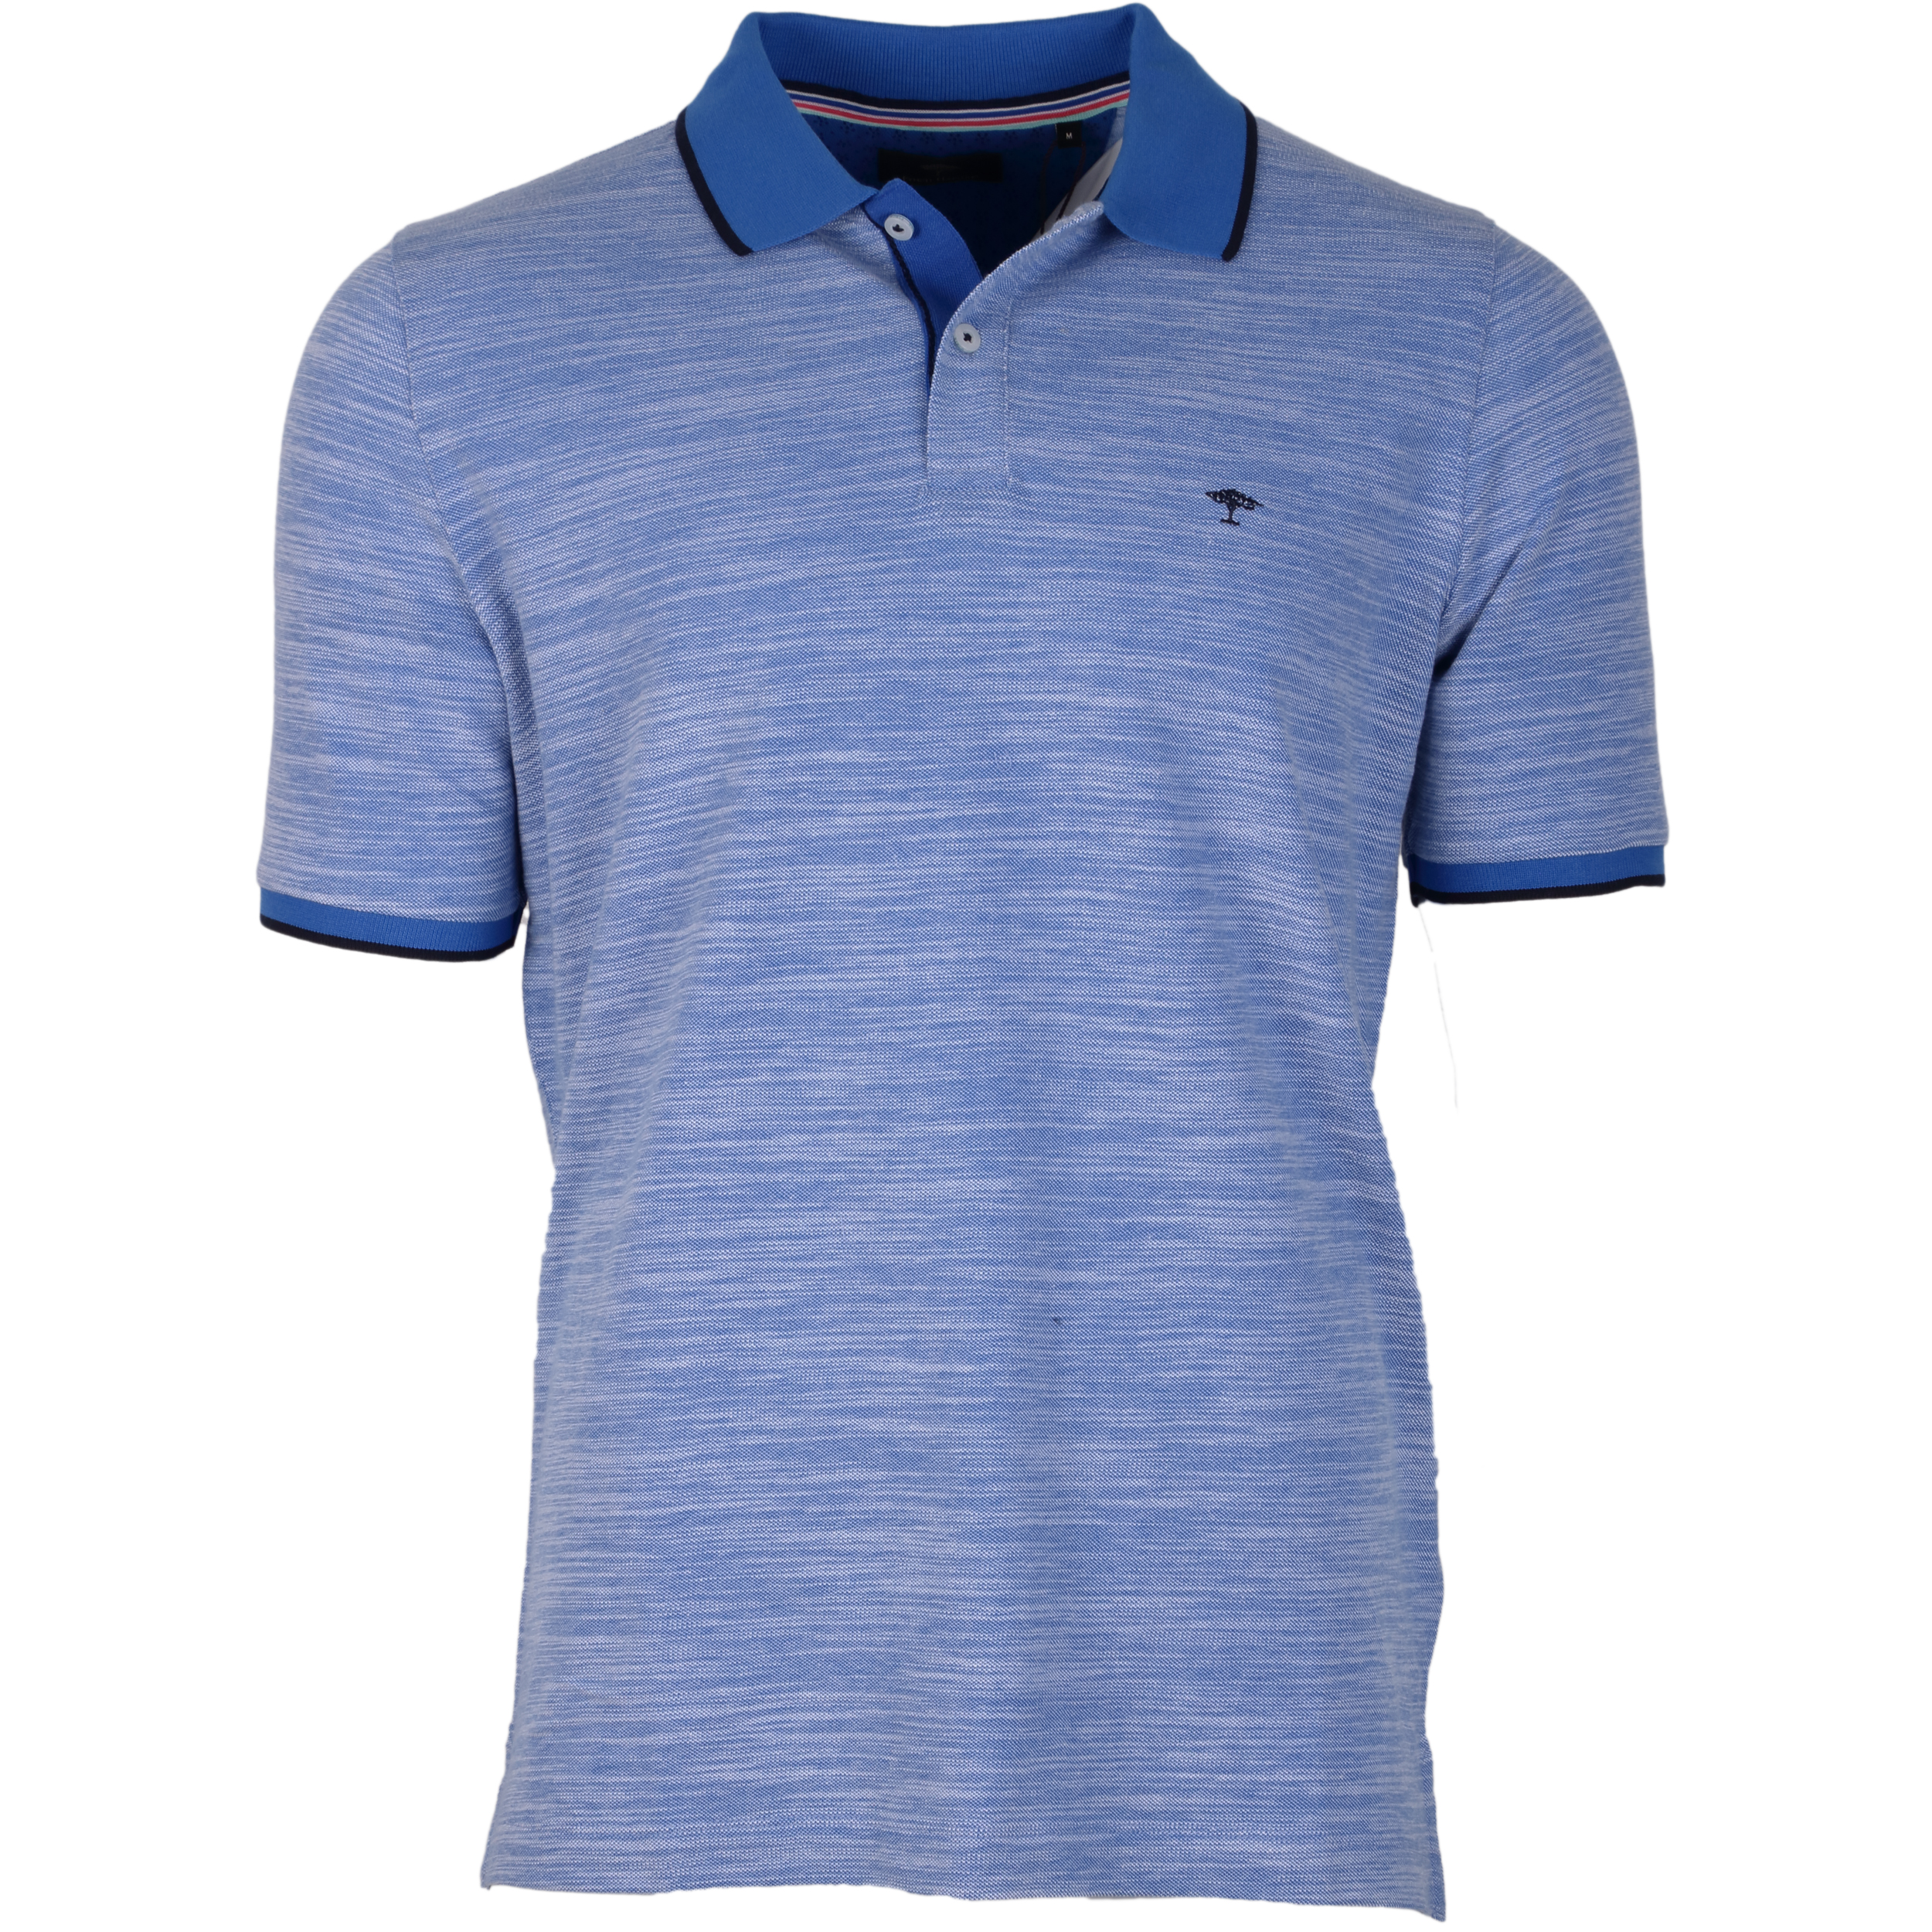 Fynch-Hatton Poloshirt 2-Tone XL blau